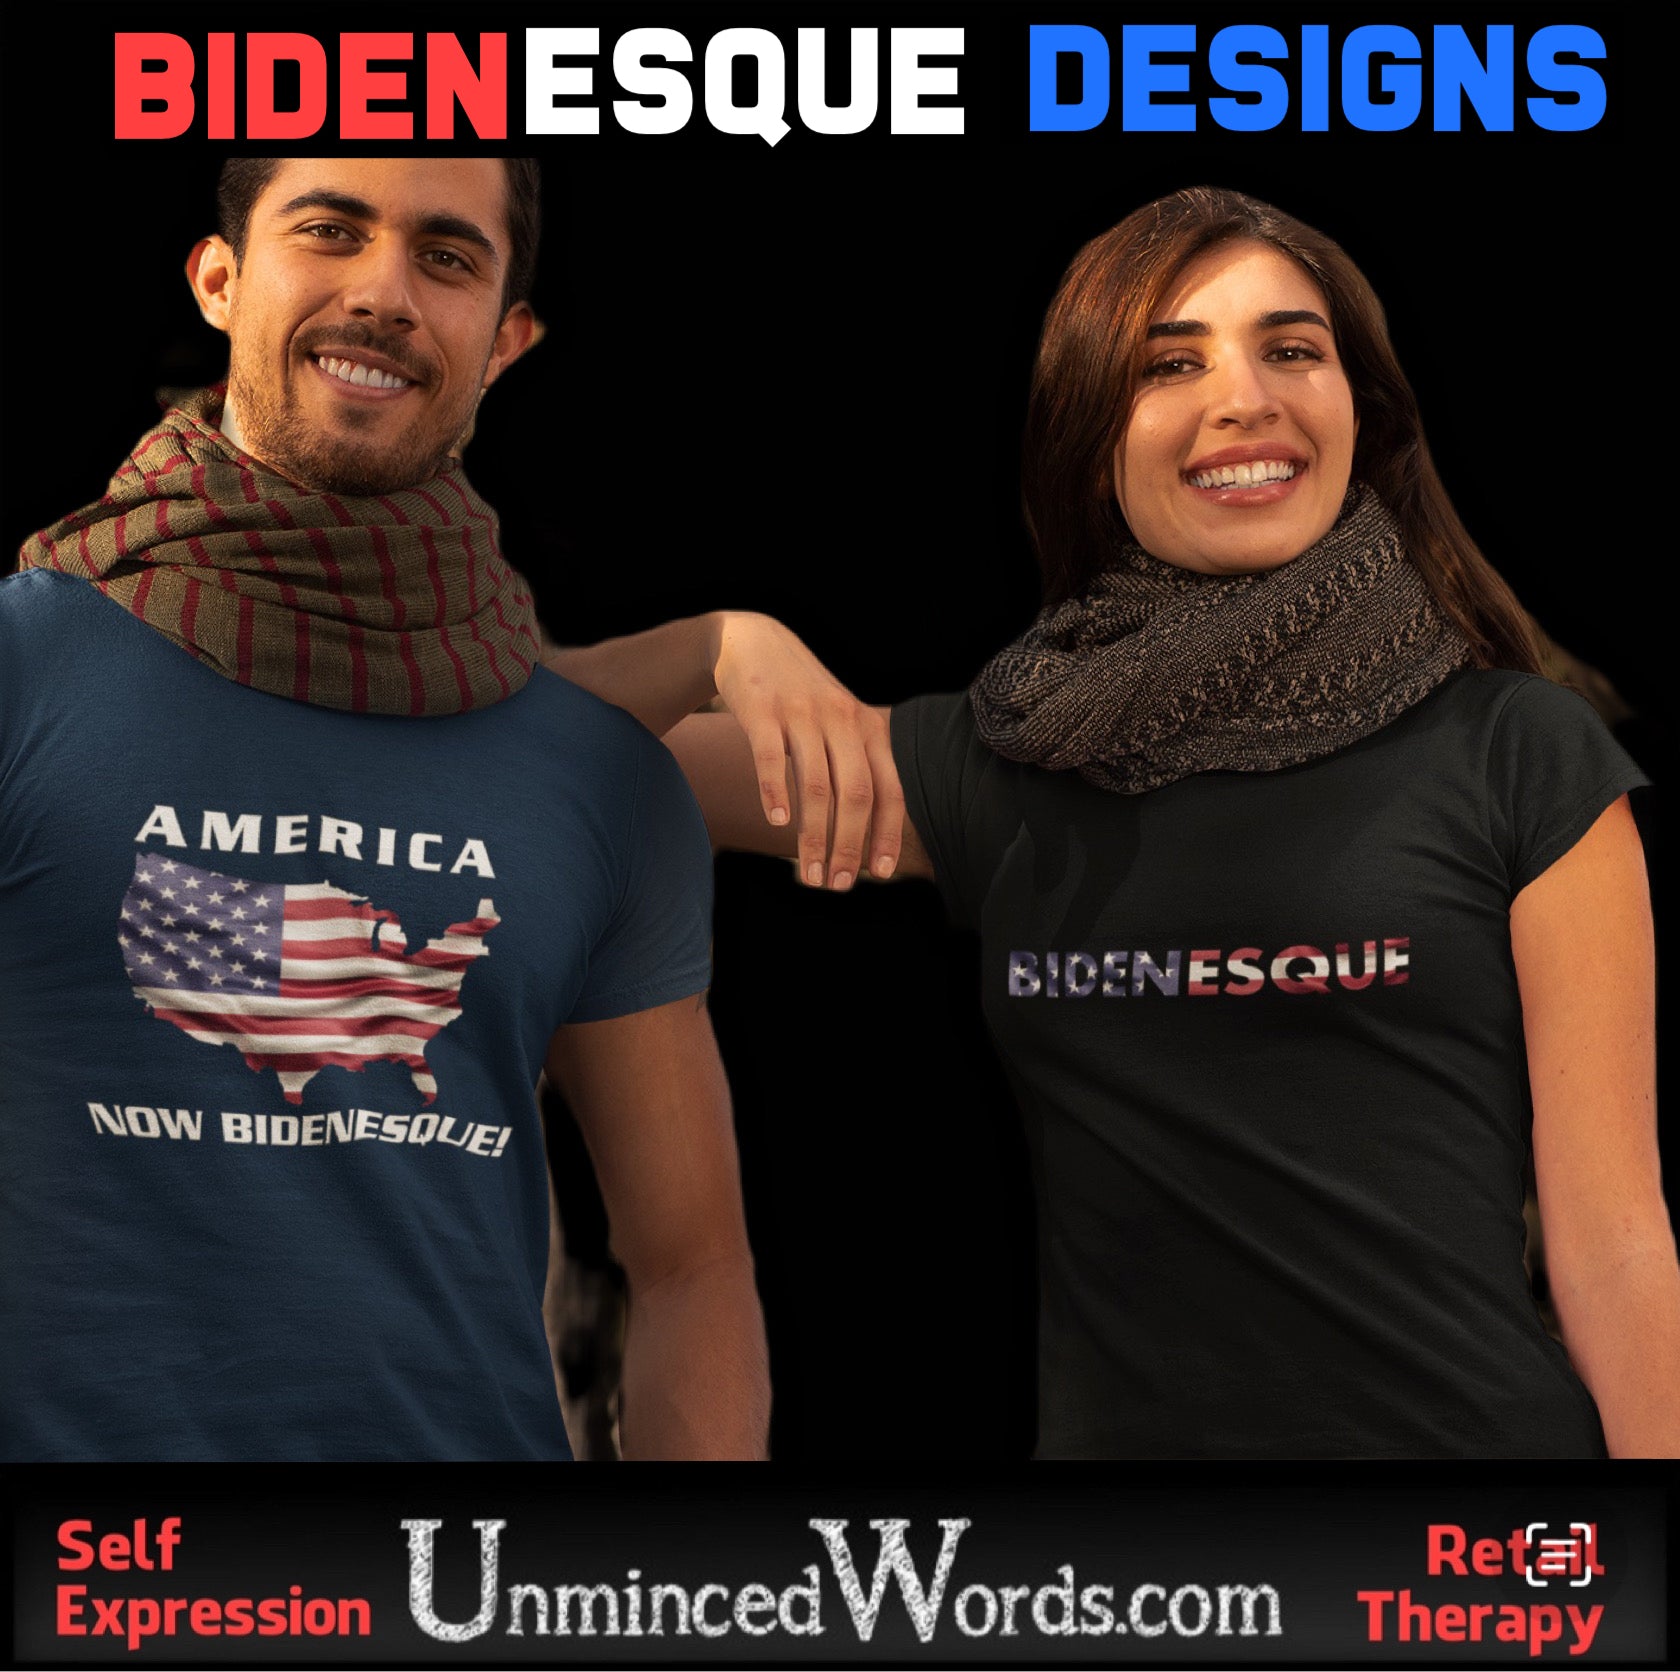 Biden inspires. Here’s our Bidenesque designs